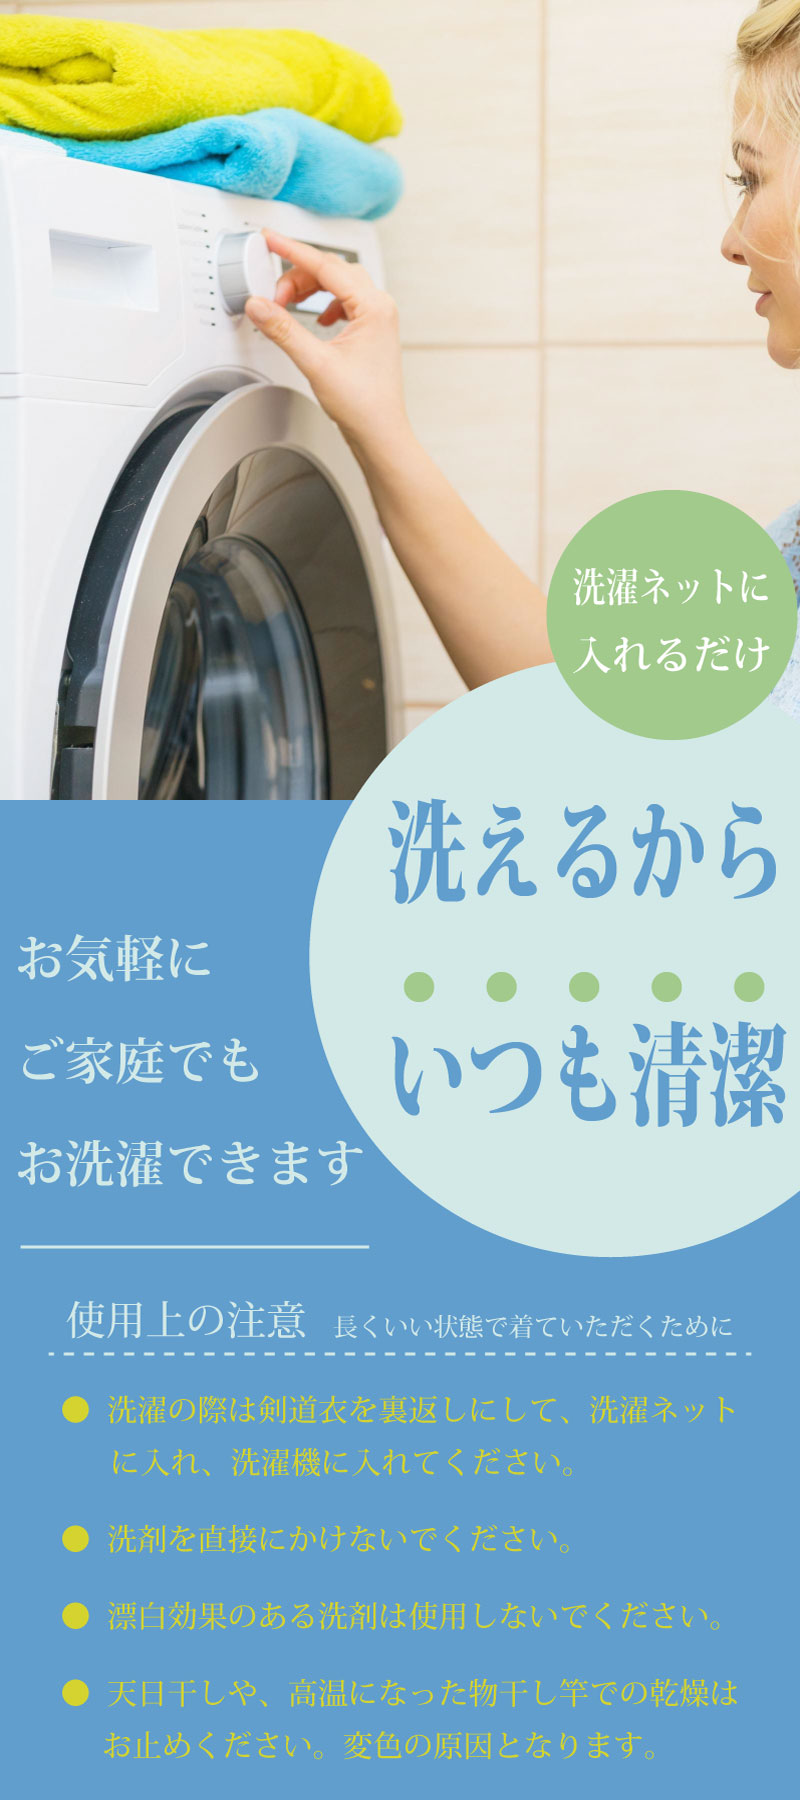 簡単に洗濯が可能。ご家庭でも気軽に洗濯できるから、いつも清潔に保つことが可能です。洗濯機で簡単に洗濯でき、乾燥も早いので、毎日の練習に最適です。いつも剣道着・袴を清潔に保つ事が出来ます。剣道着は色落ちしなく、縮みにくく、軽量で通気性にも優れています。